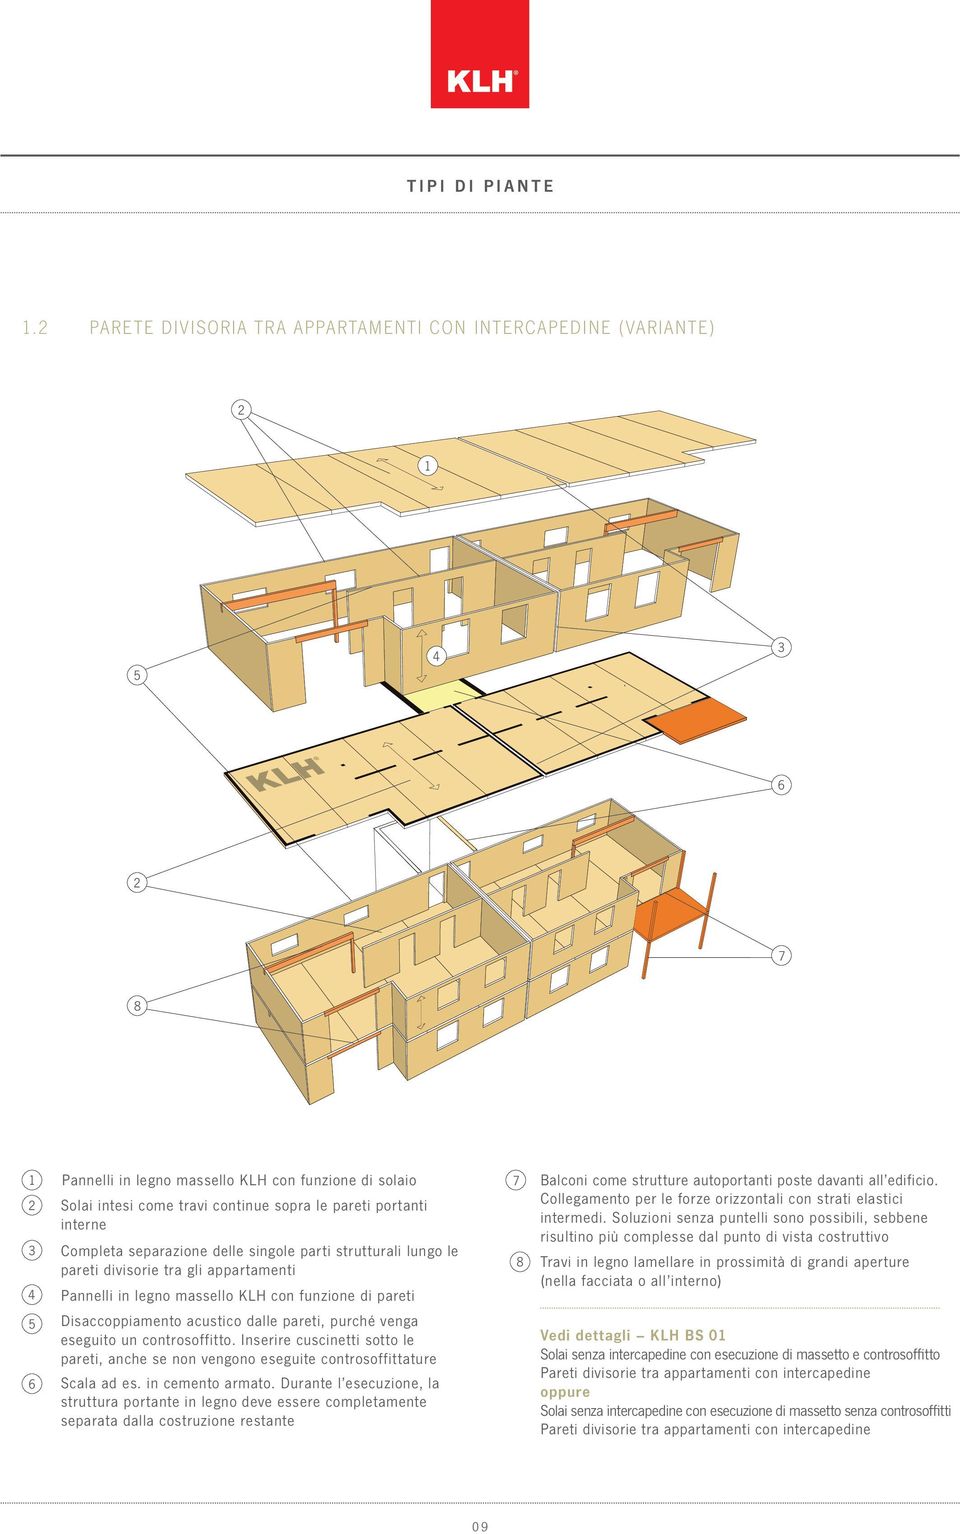 separazione delle singole parti strutturali lungo le pareti divisorie tra gli appartamenti Pannelli in legno massello KLH con funzione di pareti Balconi come strutture autoportanti poste davanti all